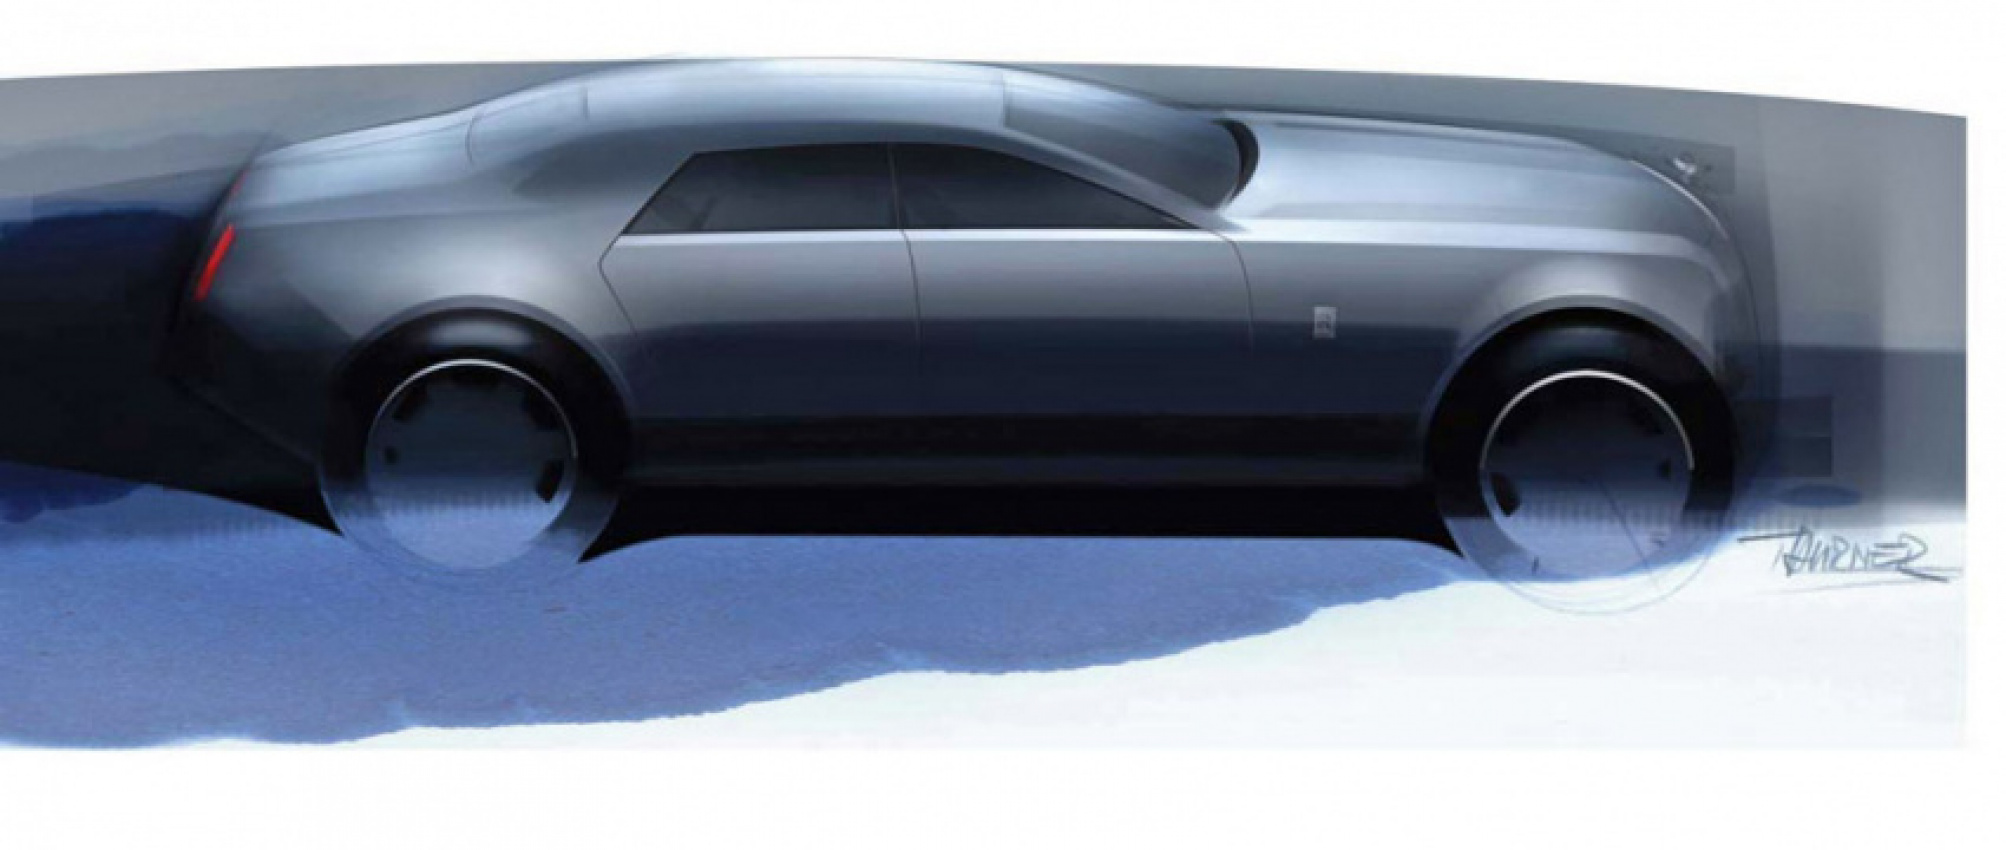 autos, cars, review, rolls-royce, 2000s cars, concept, luxury cars, rolls-royce model in depth, 2009 rolls-royce 200ex concept